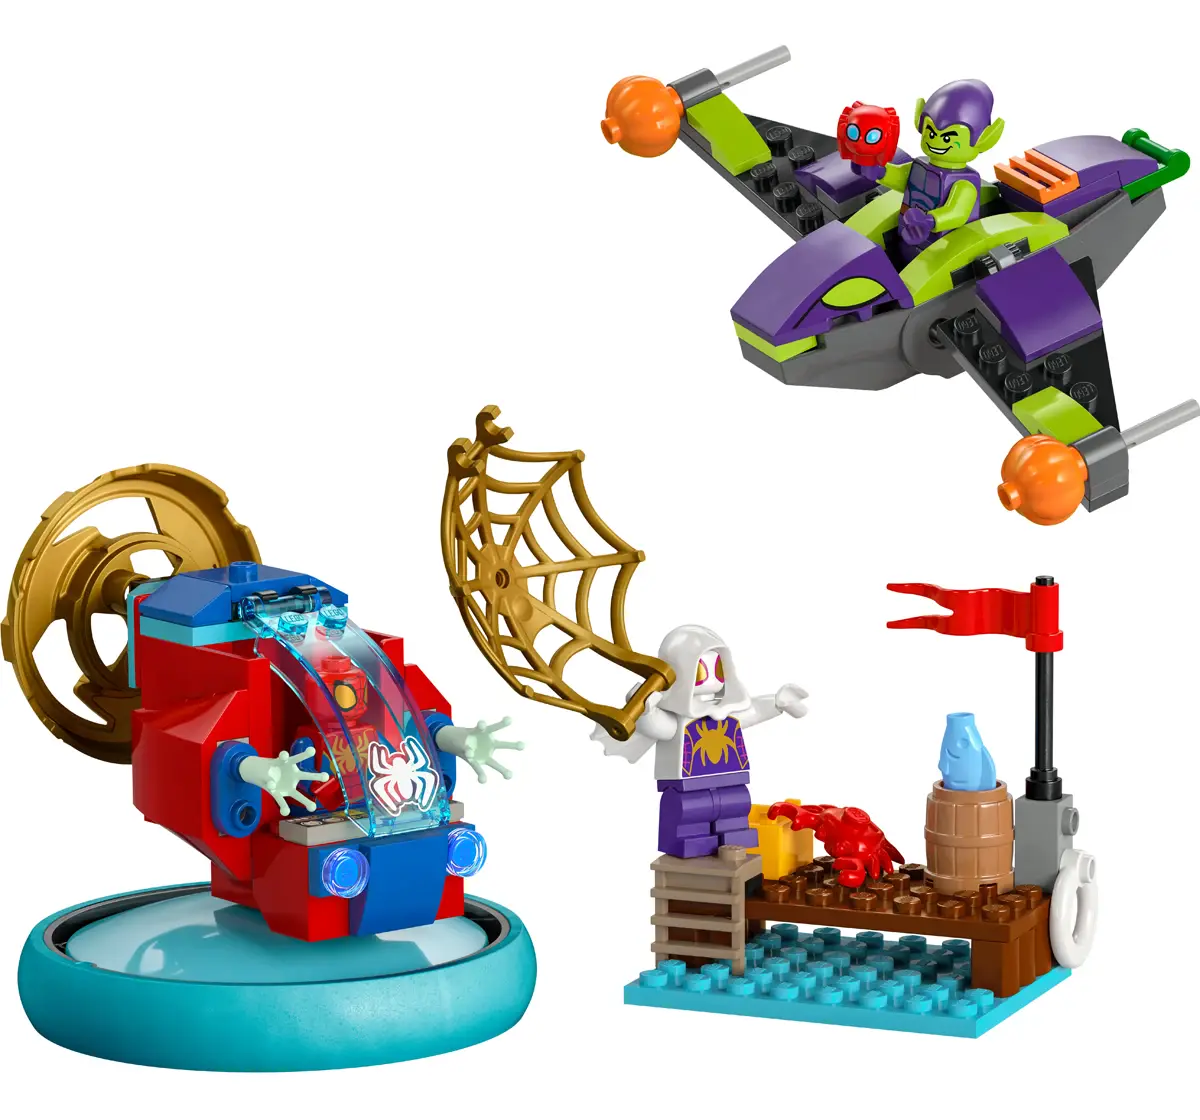 LEGO Spidey vs. Green Goblin Super Hero Toy 10793 (1212 Pieces)